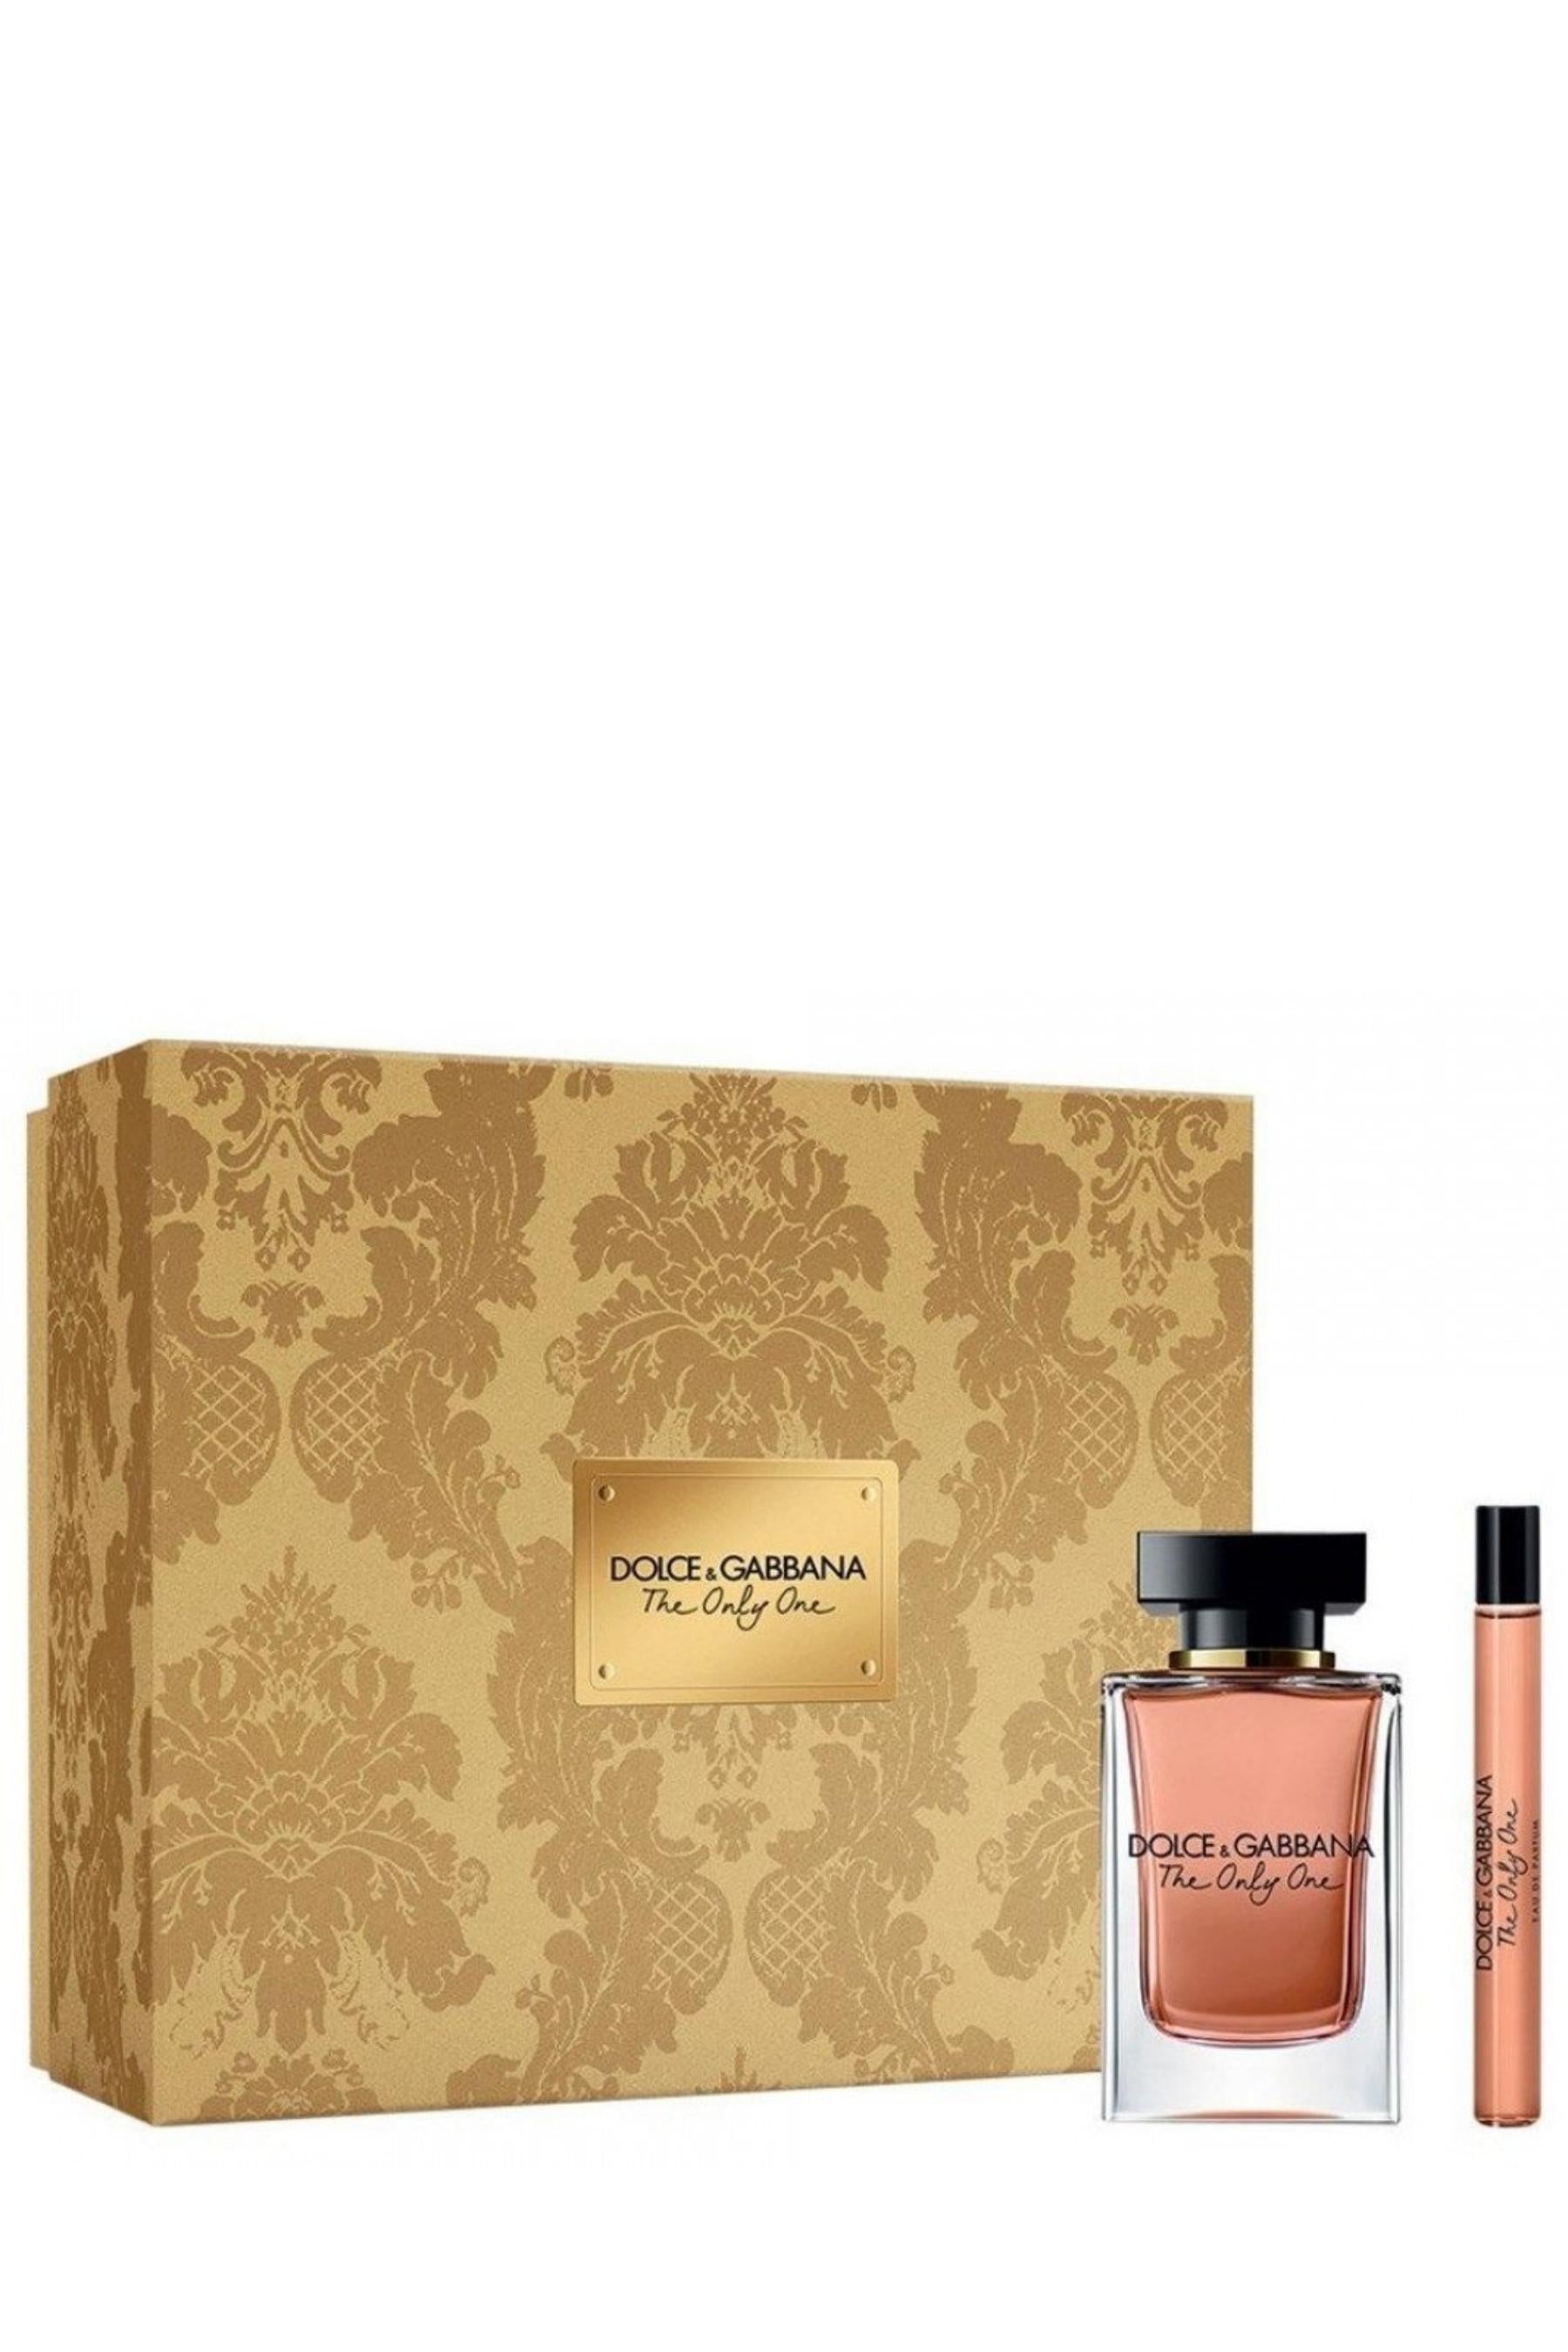 Dolce Gabbana | The Only One Eau de Parfum 2 Pc Set